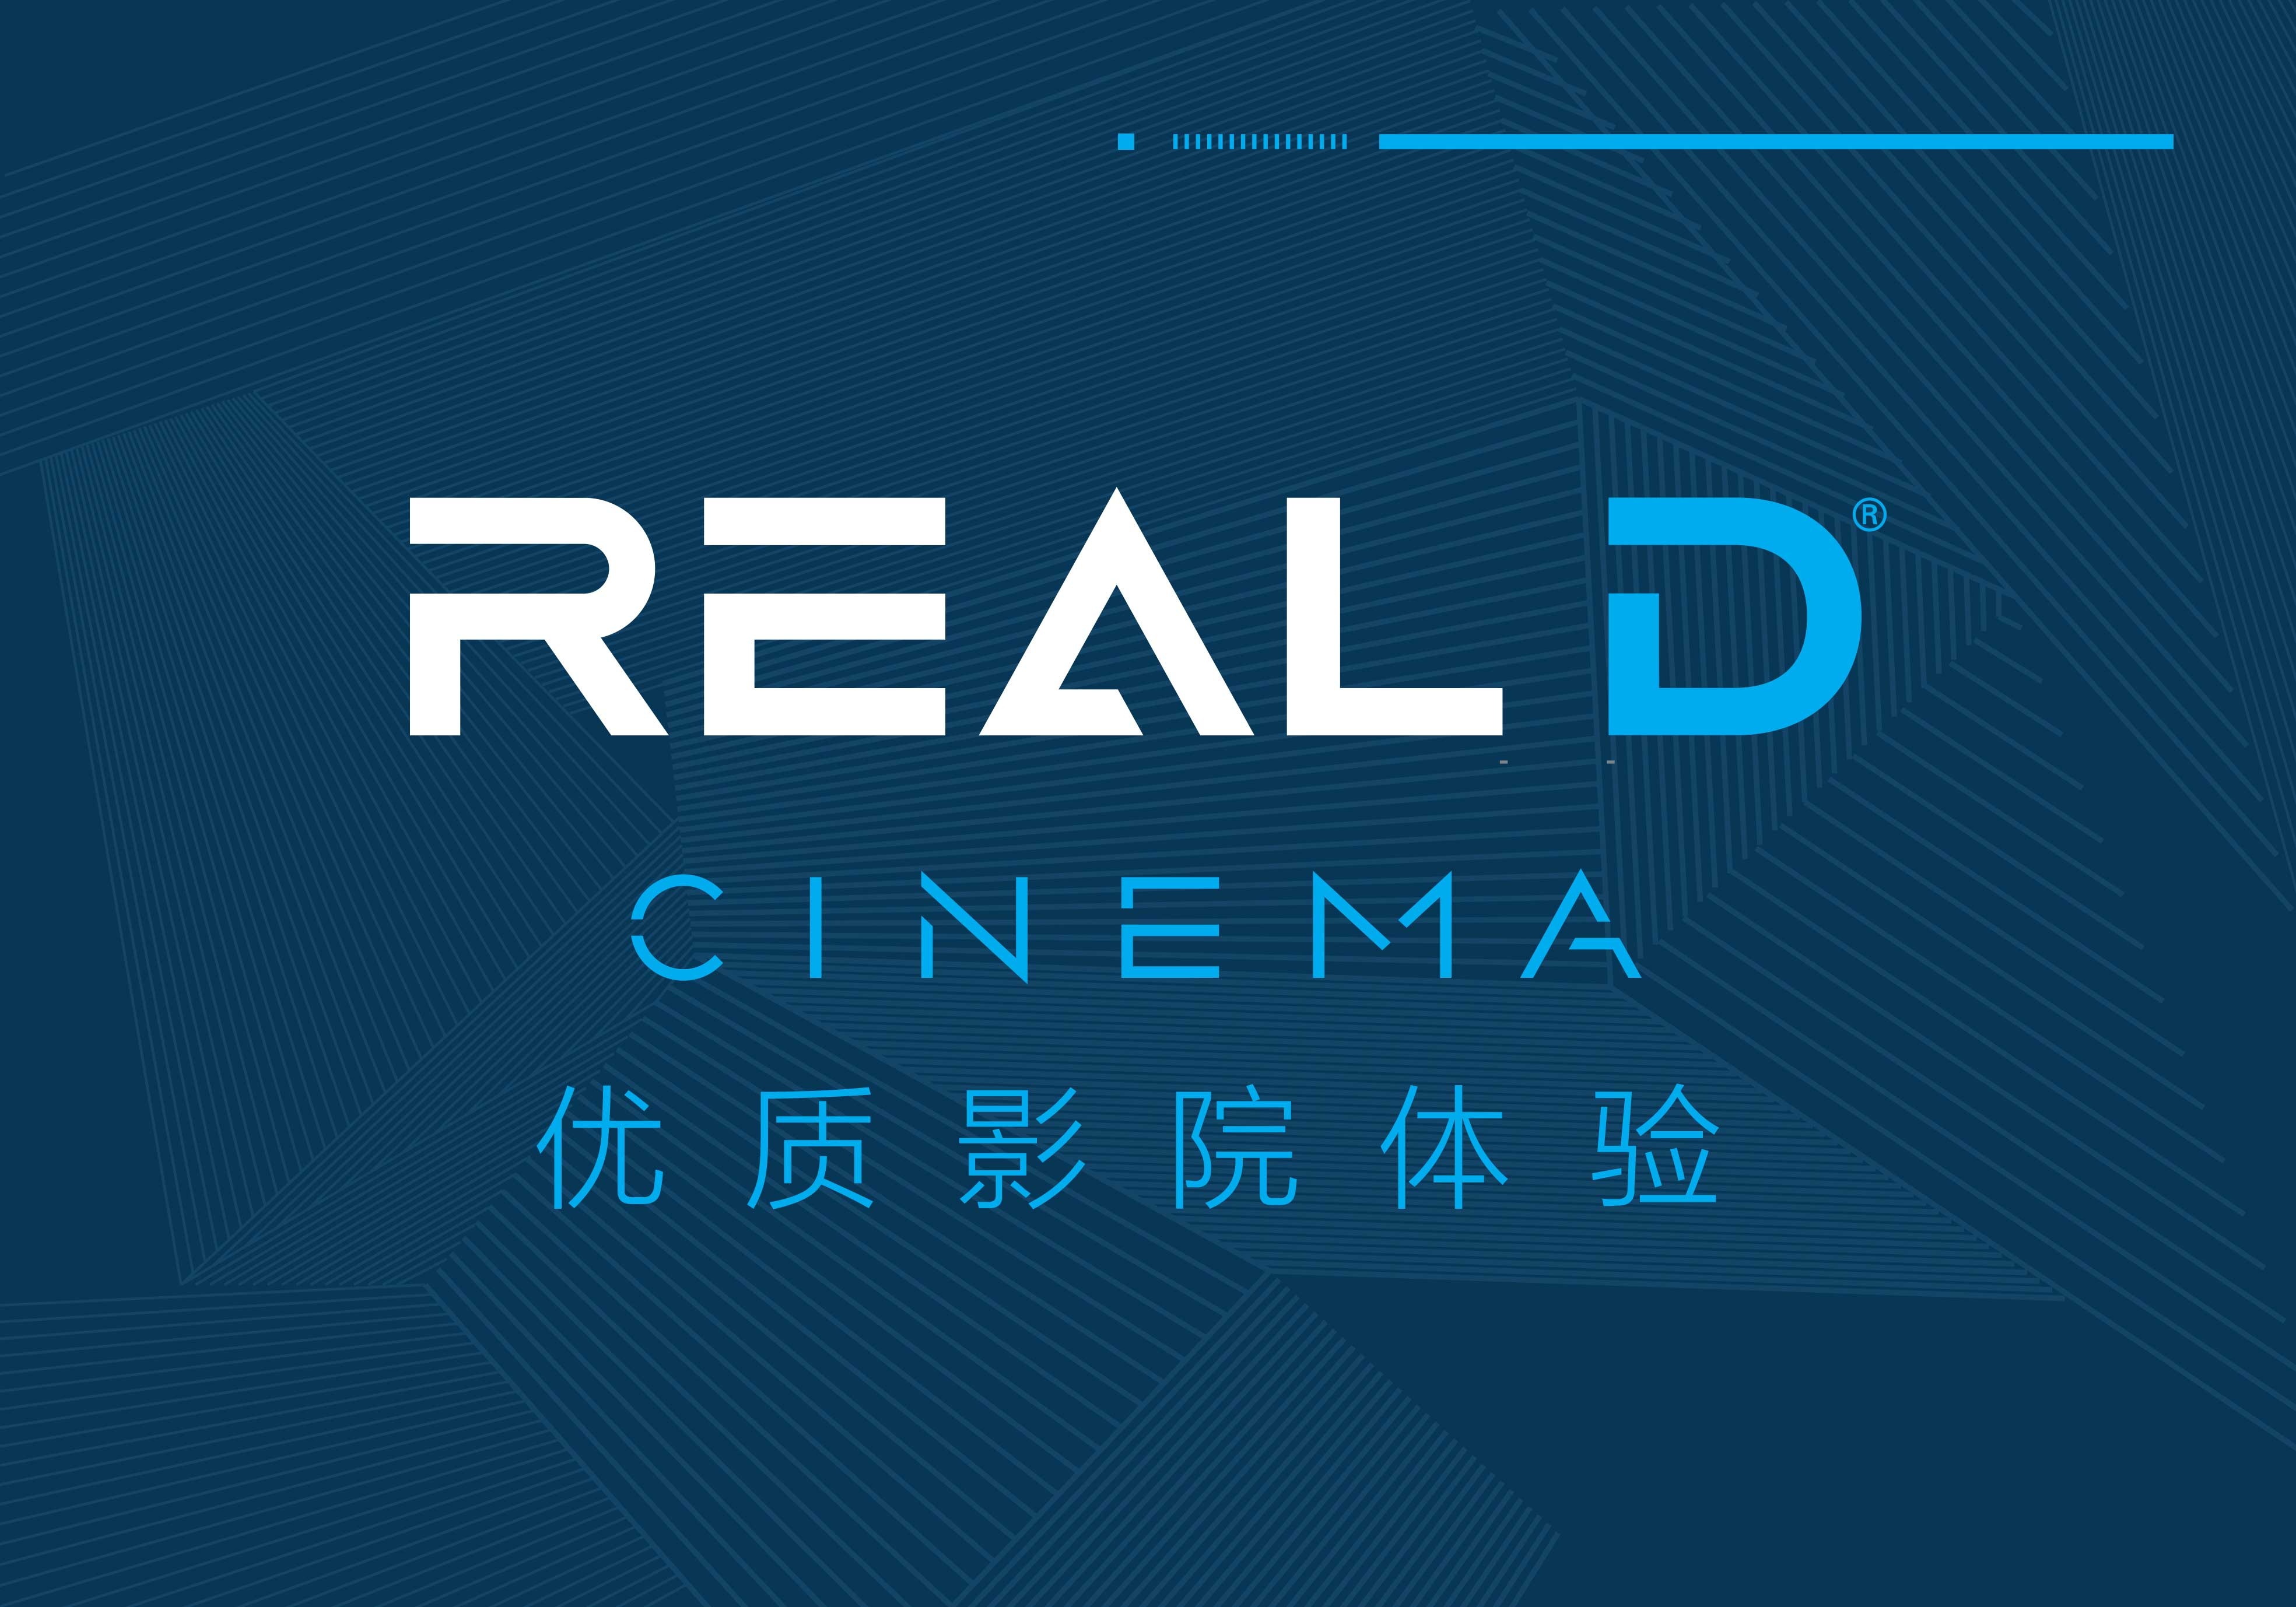 首家RealD Cinema影厅落户杭州新天地新远影城